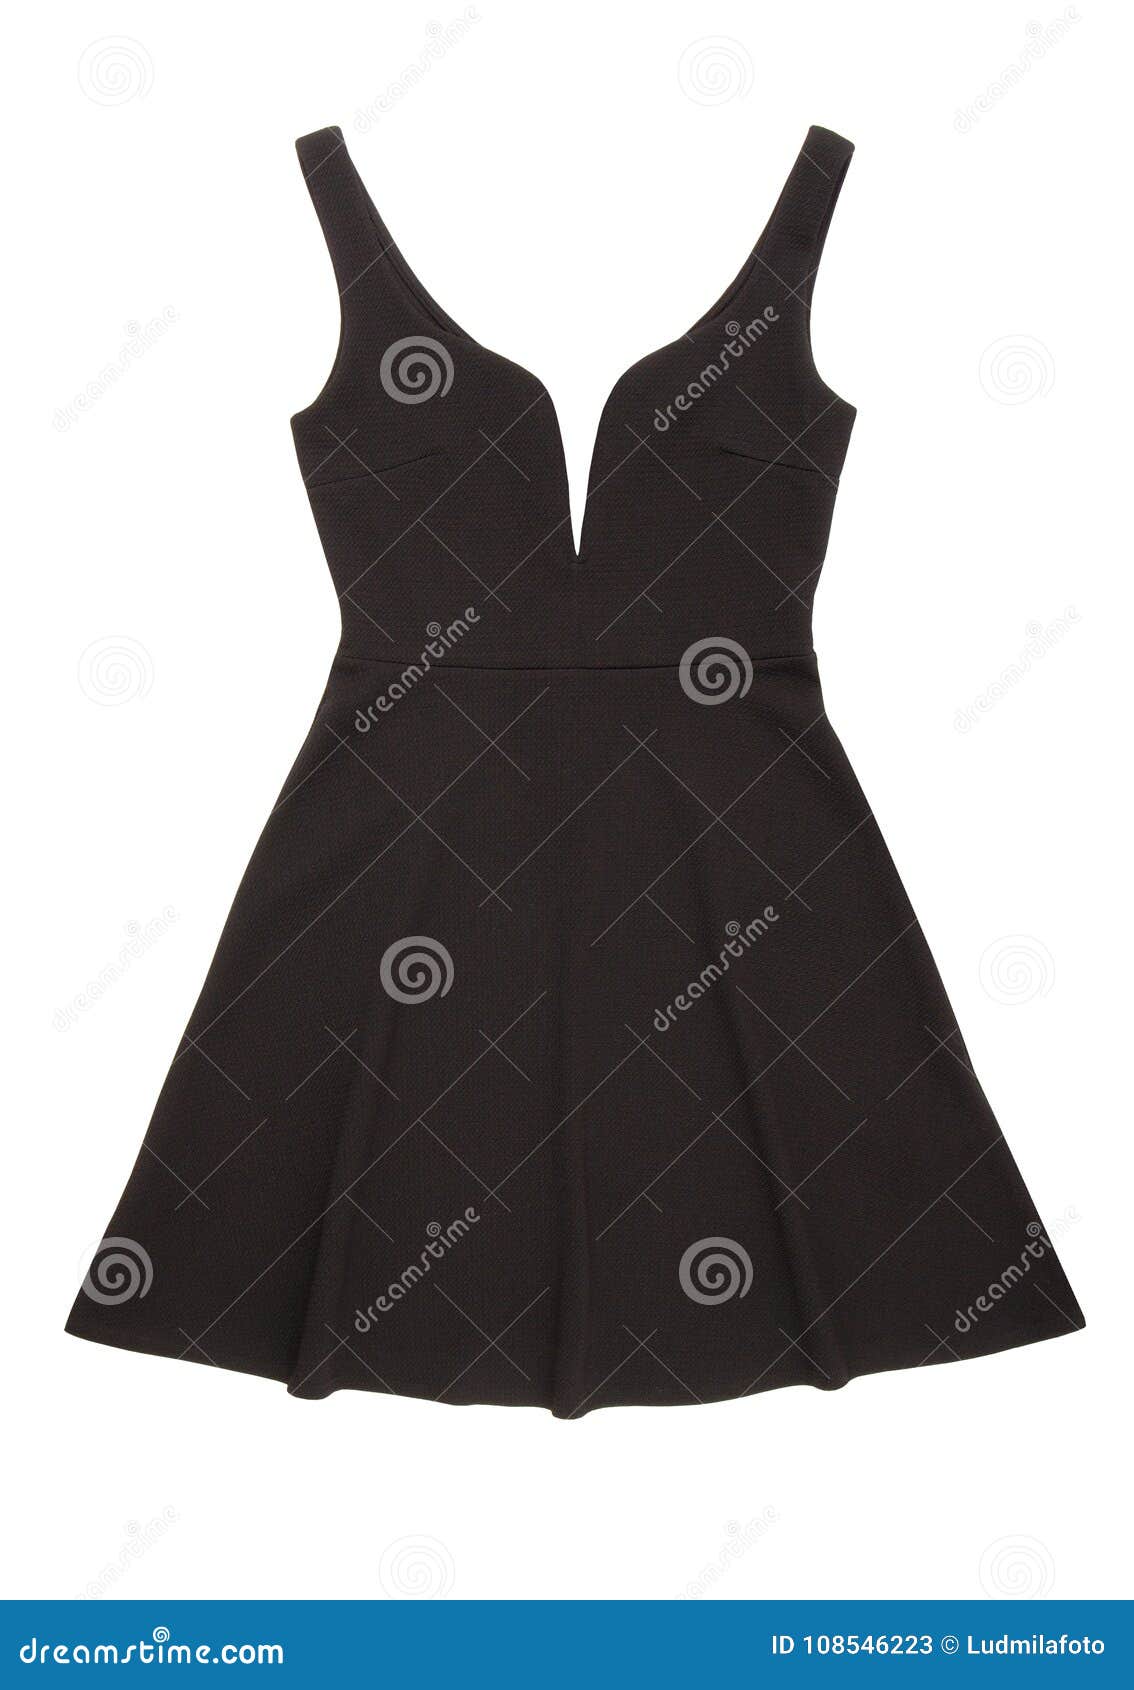 Vestido De Noche Negro Con Escote Bajo, Vestido Negro Cóctel, Galán Imagen de archivo - Imagen de ropa, 108546223